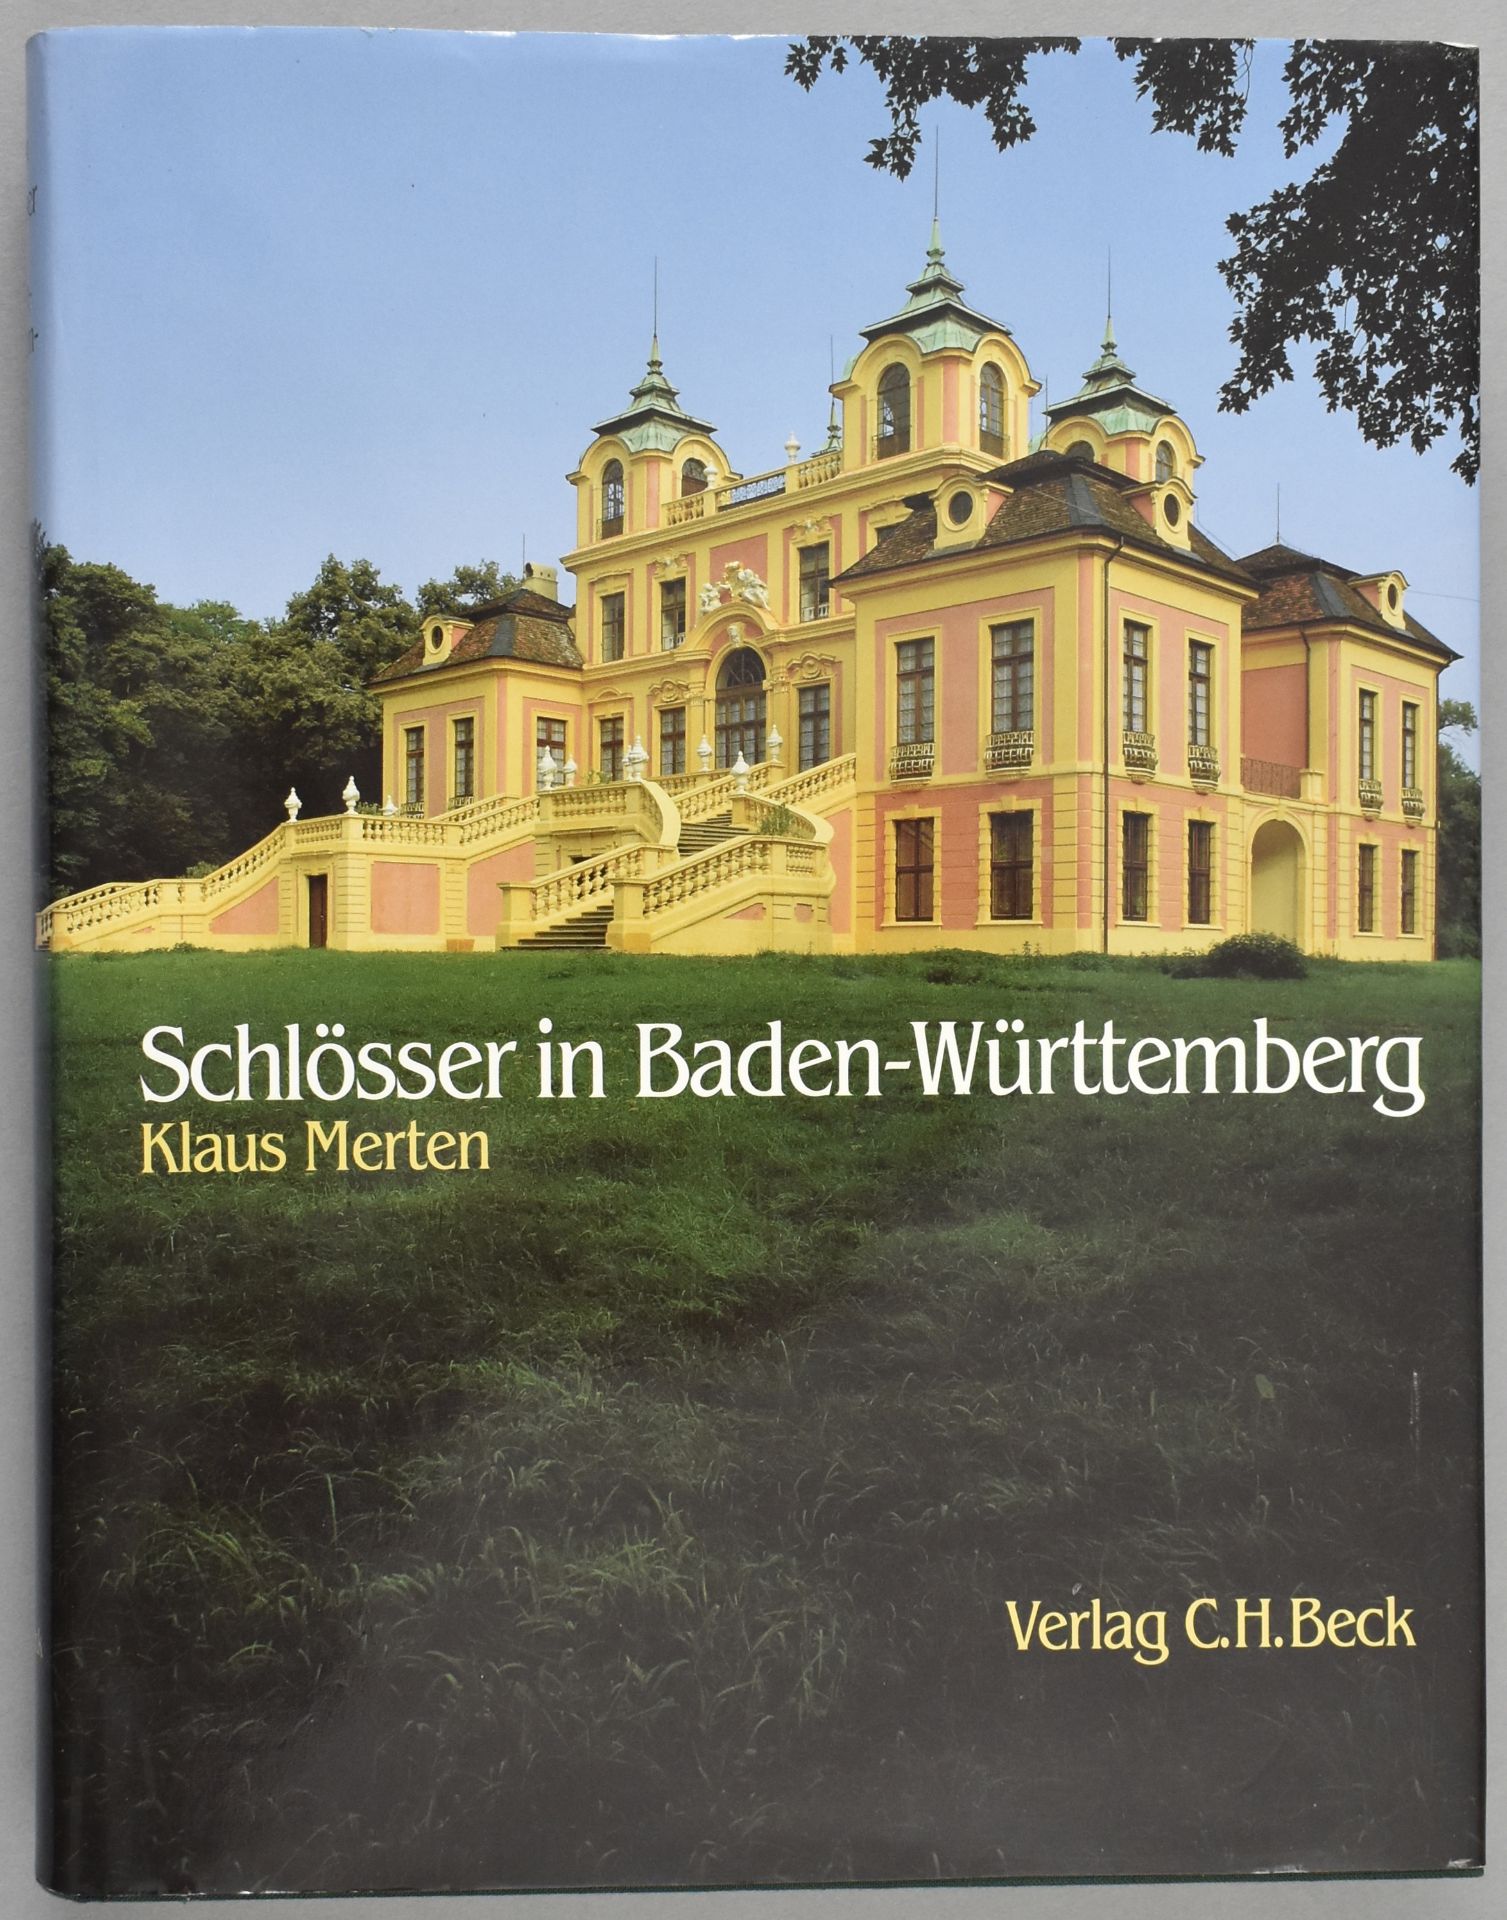 Merten, Klaus. Schlösser in Baden-Württemberg.